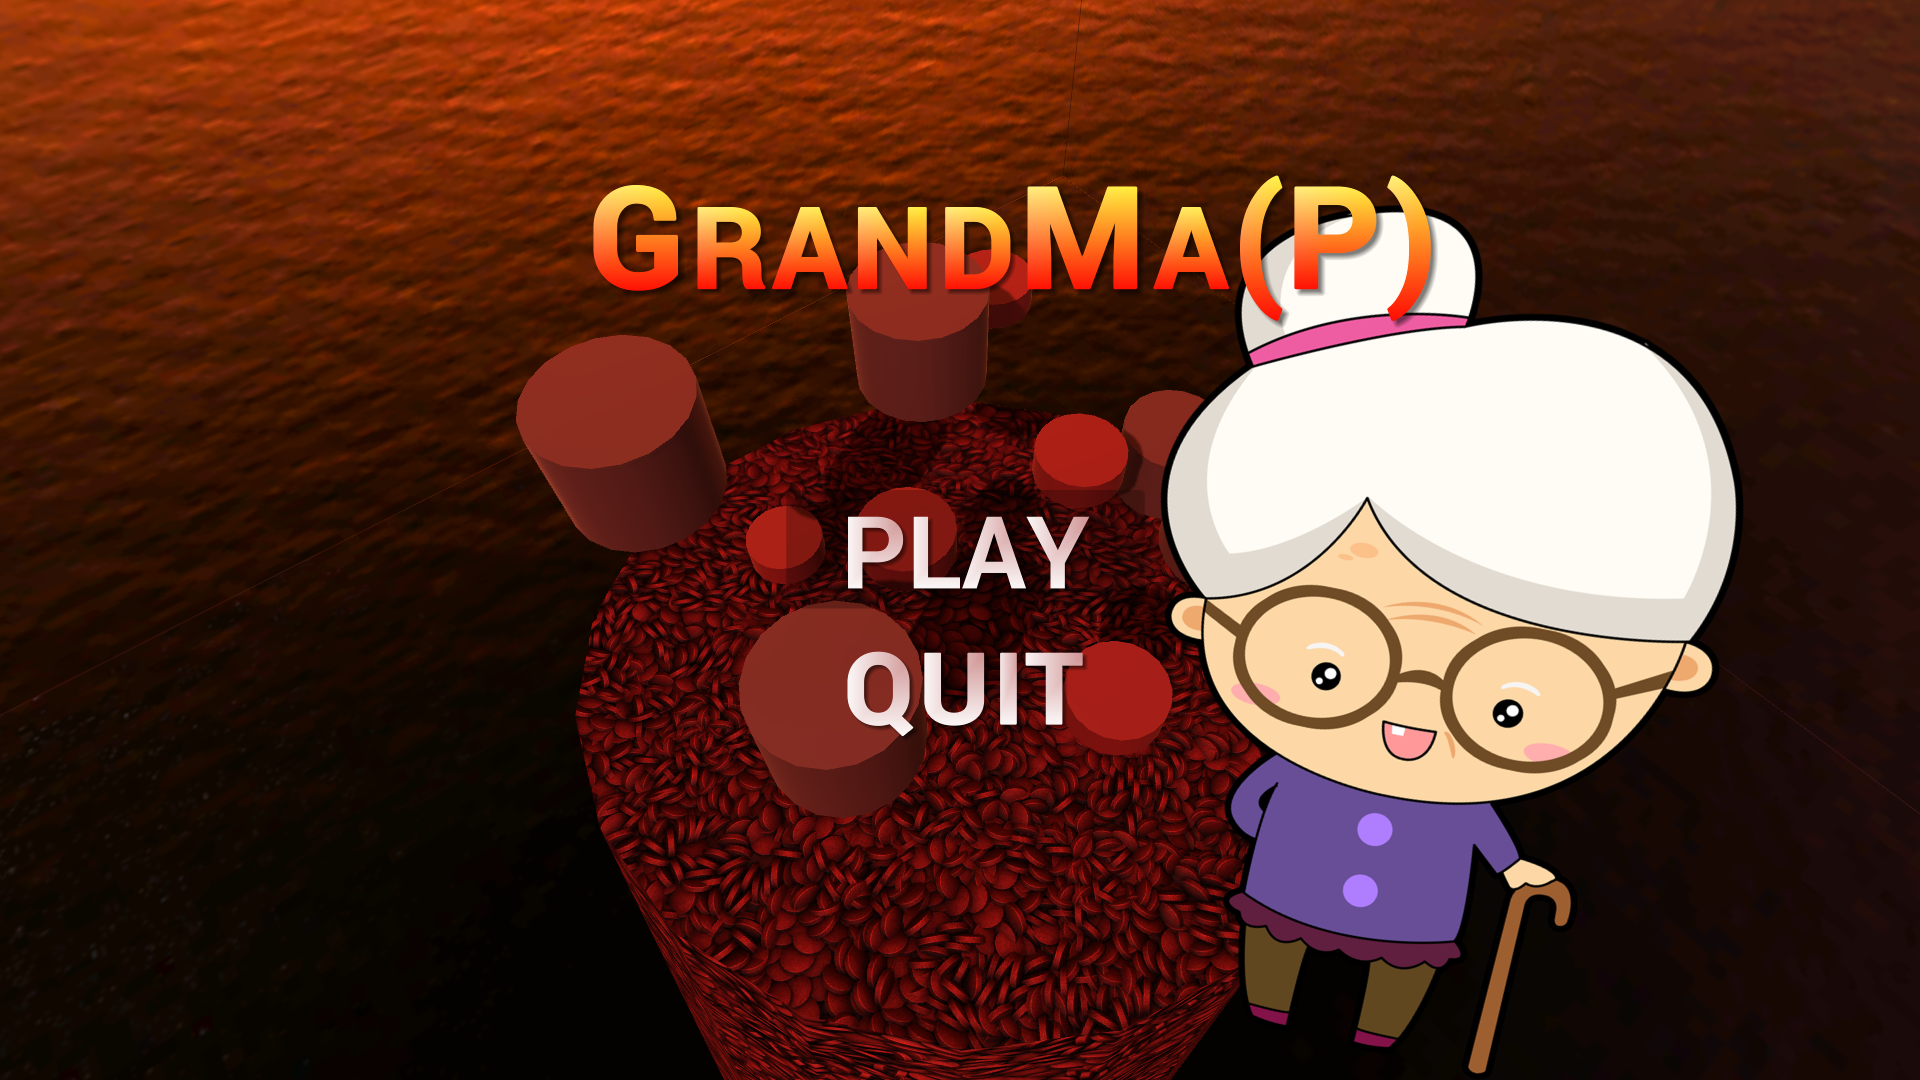 GrandMa(P)